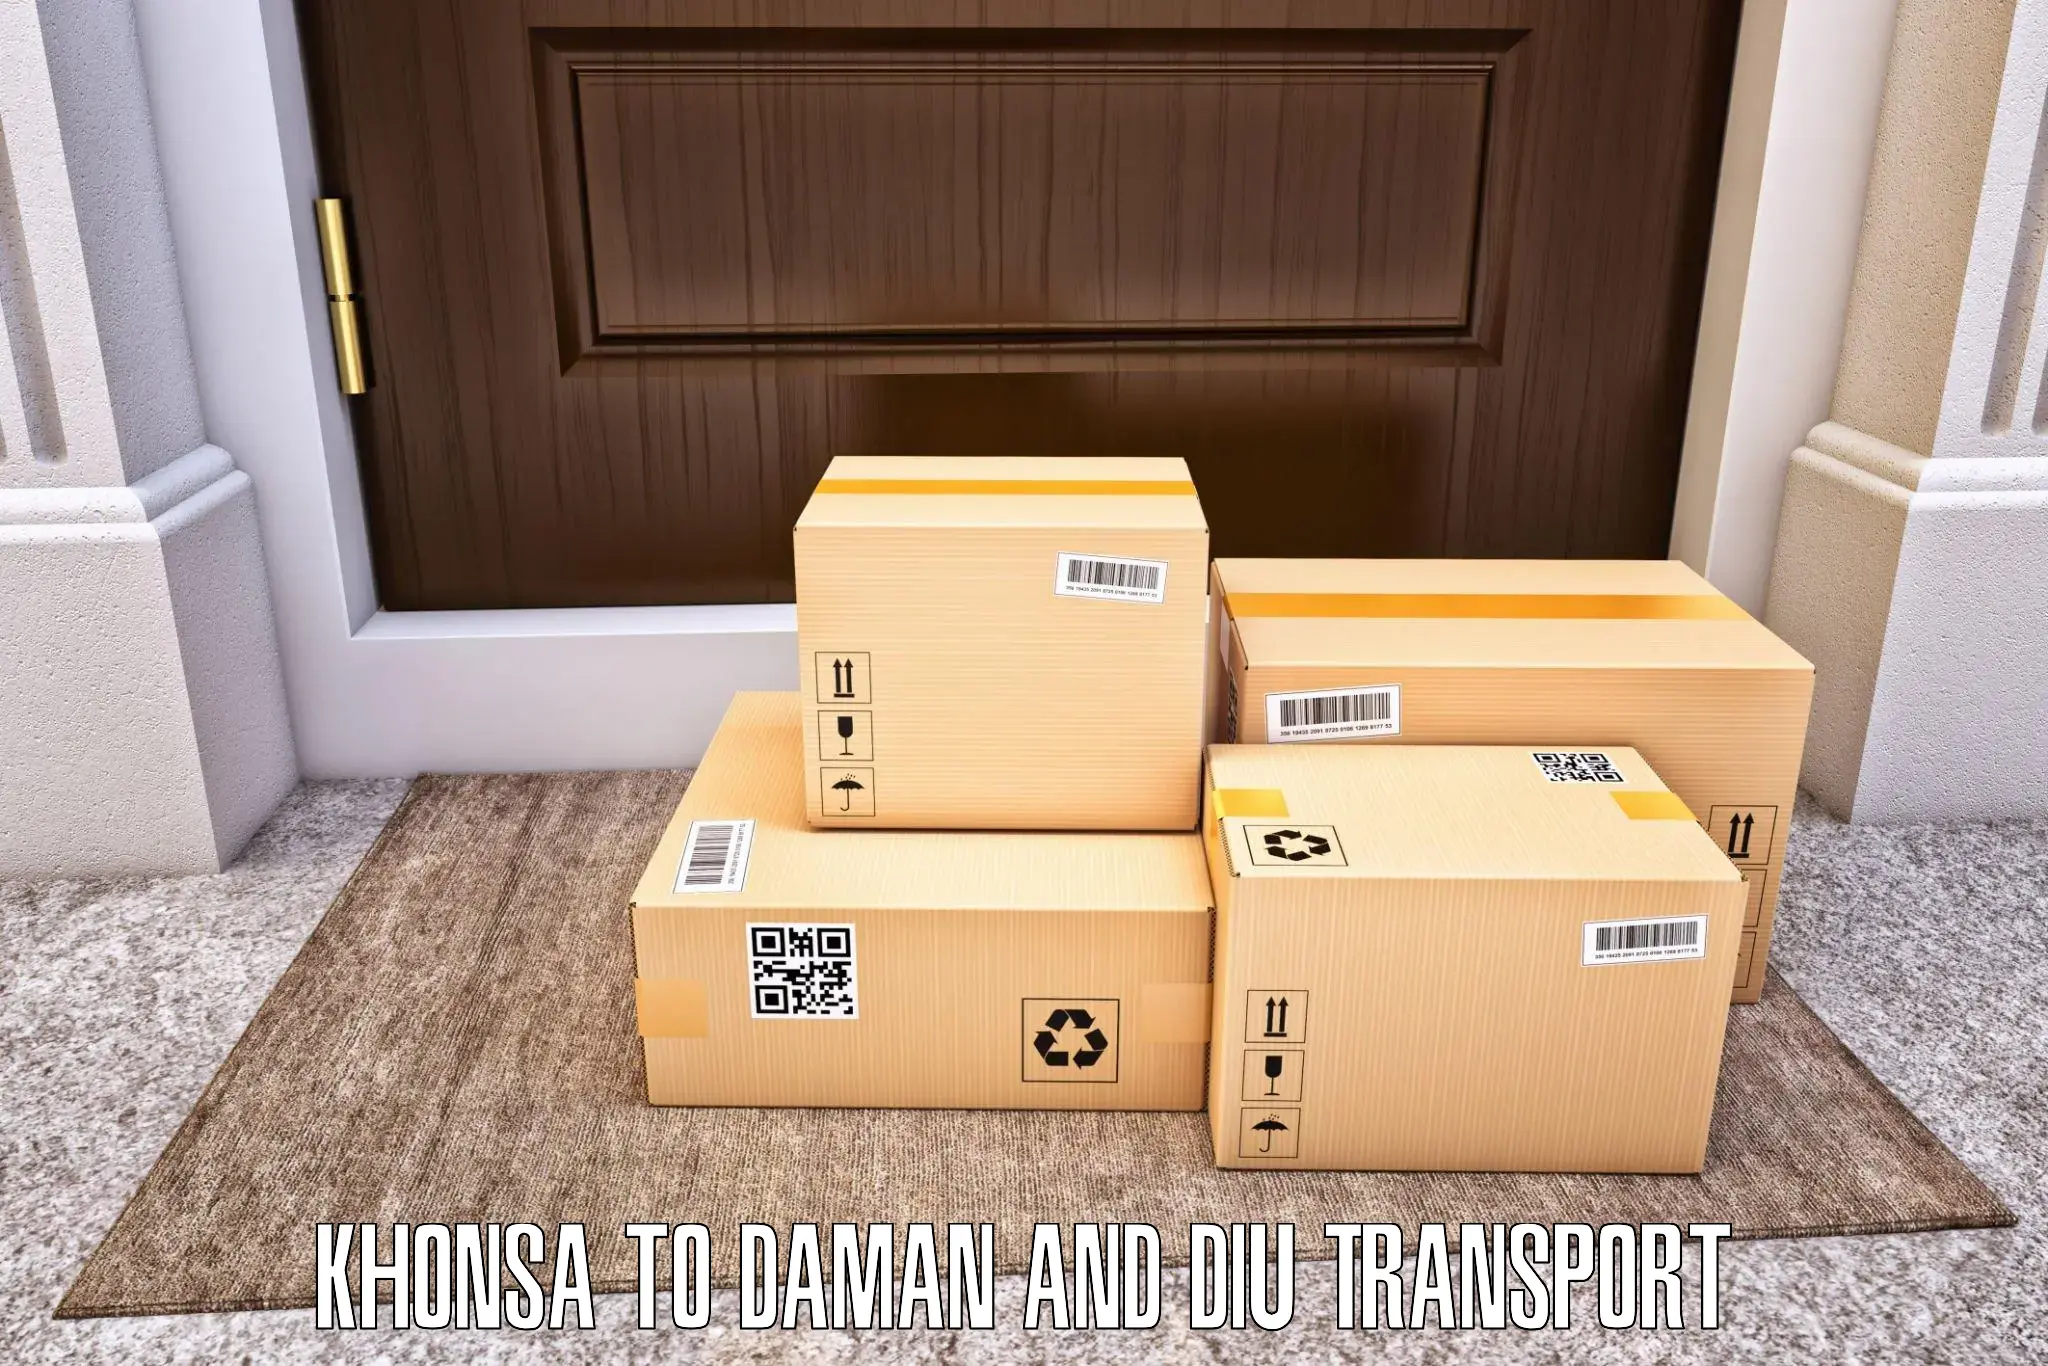 Two wheeler parcel service Khonsa to Daman